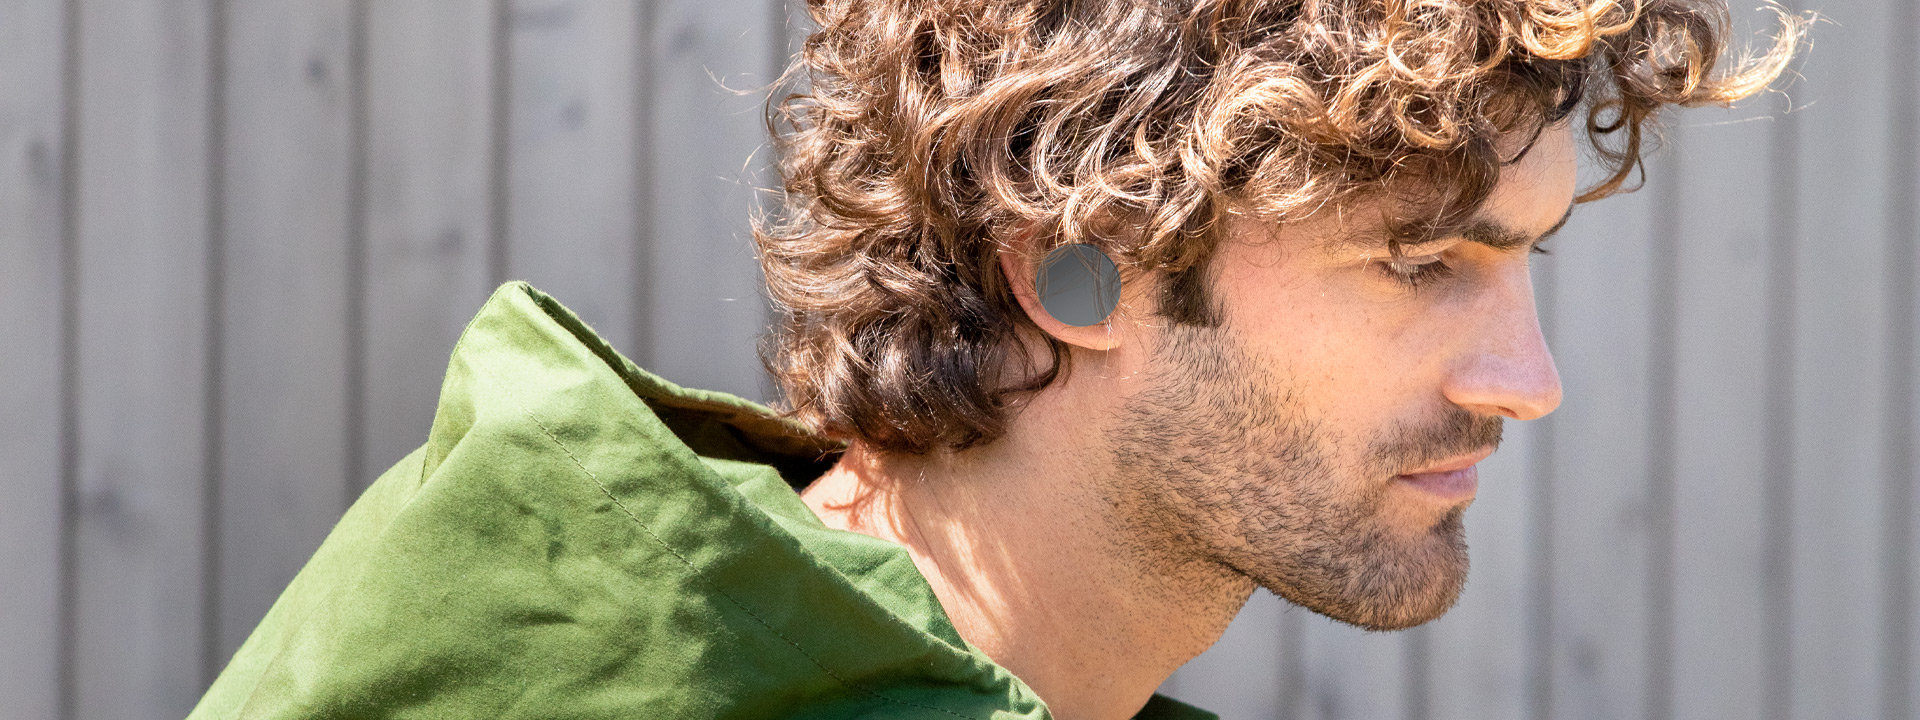 Mężczyzna z założonymi słuchawkami dousznymi Surface Earbuds z nakładkami w idealnym dla niego rozmiarze.